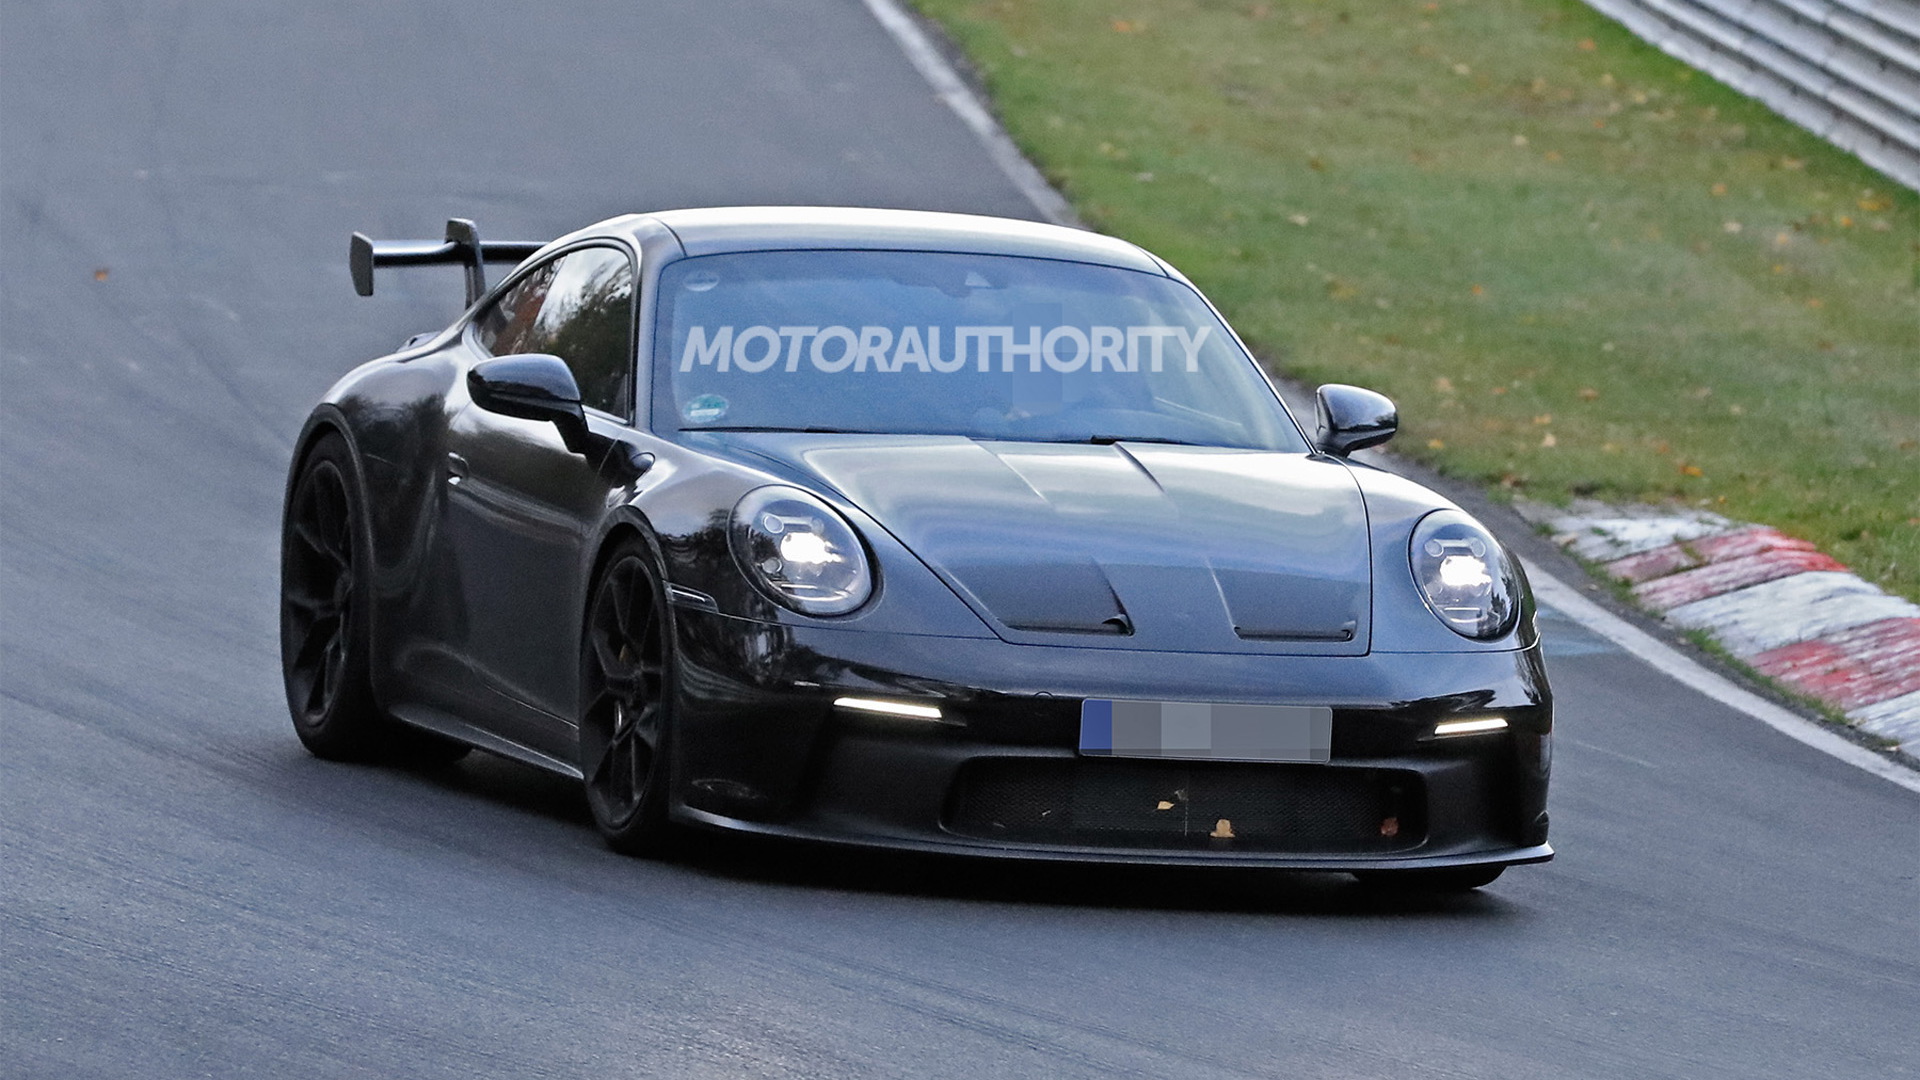 2021 Porsche 911 GT3 spy shots - Photo credit: S. Baldauf/SB-Medien